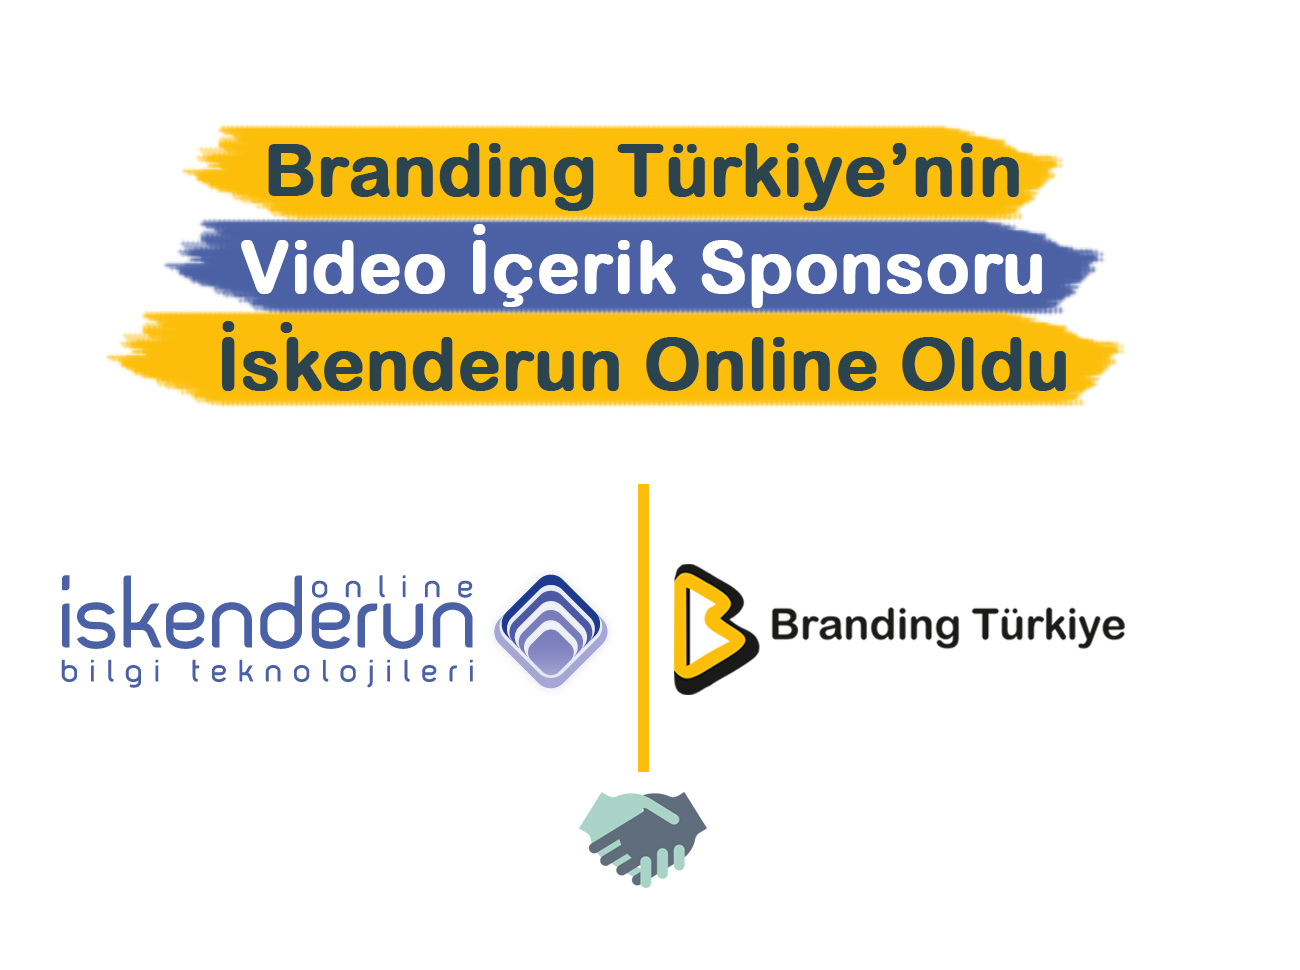 Branding Türkiye’nin Video İçerik Sponsoru